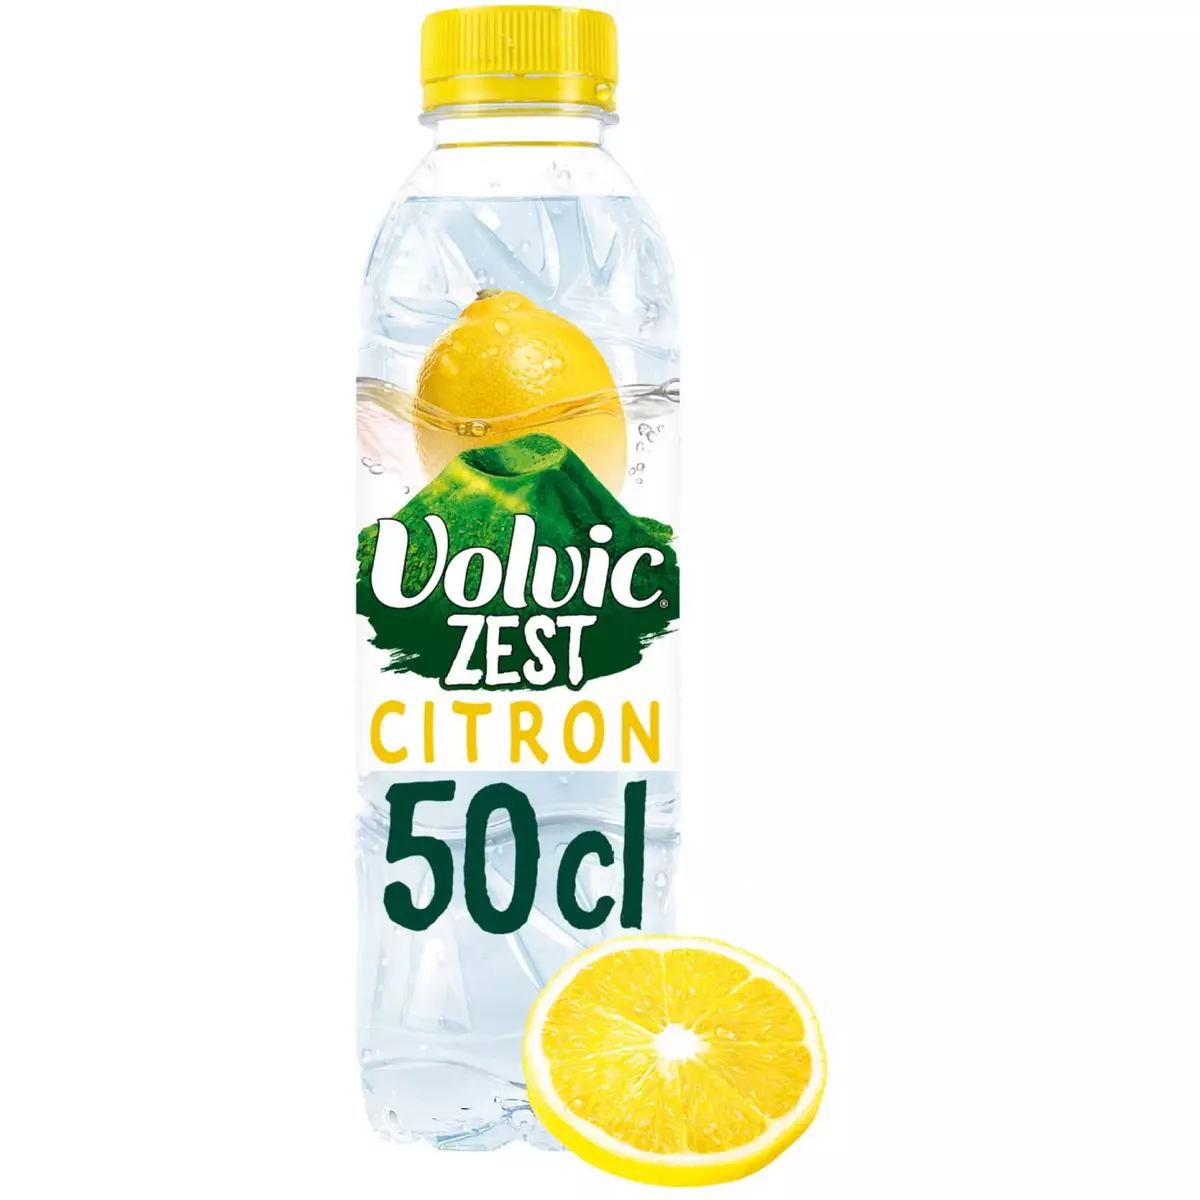 VOLVIC Eau aromatisée zest citron 50cl